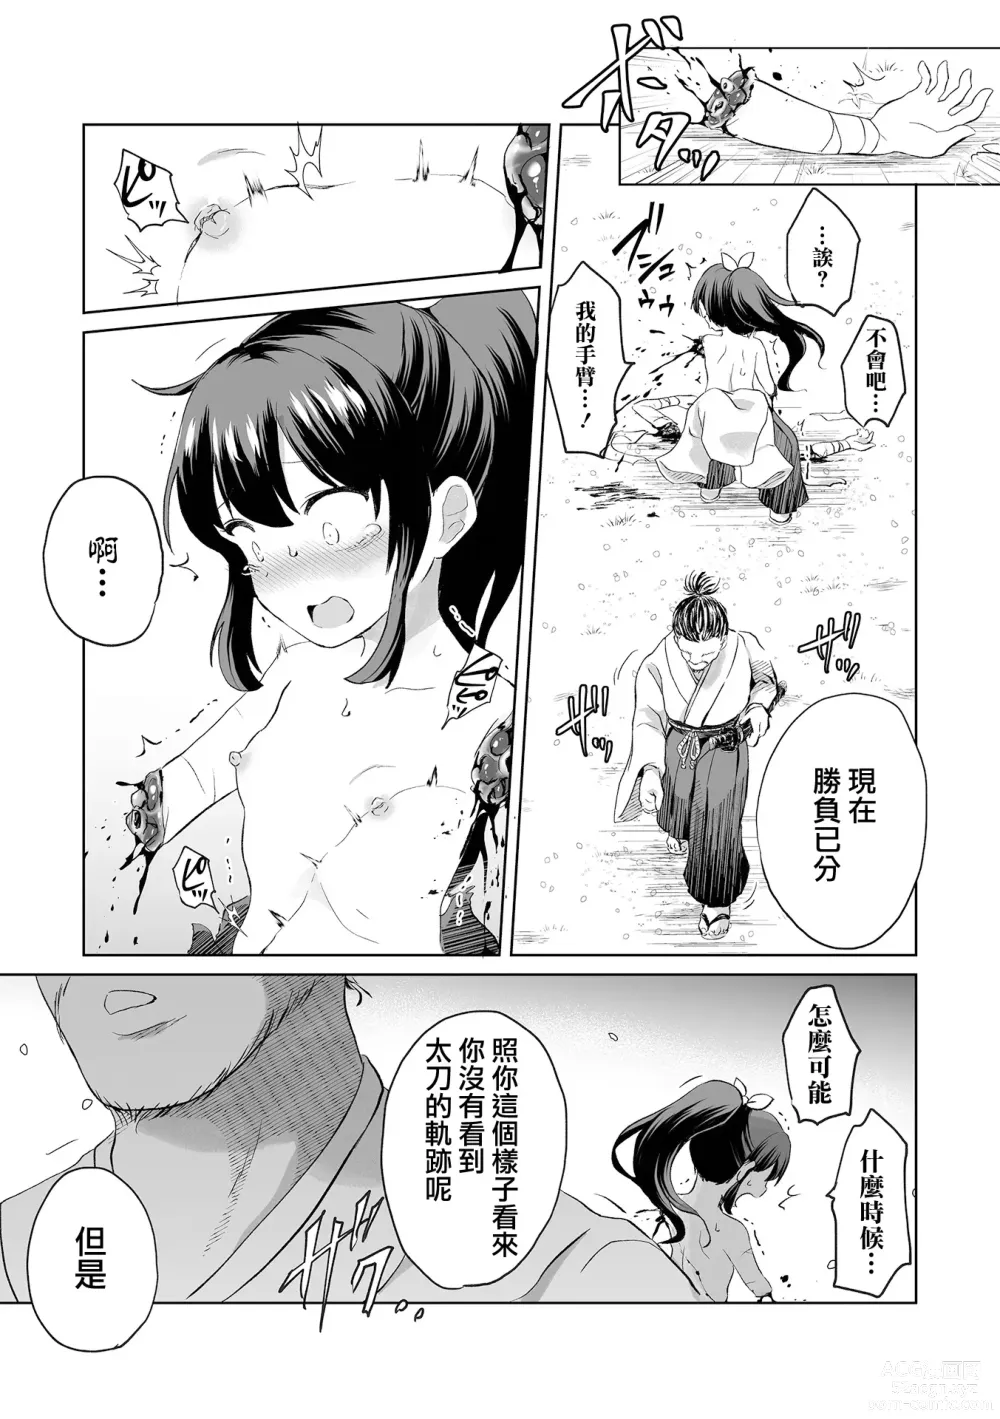 Page 6 of manga Ouka Chiru